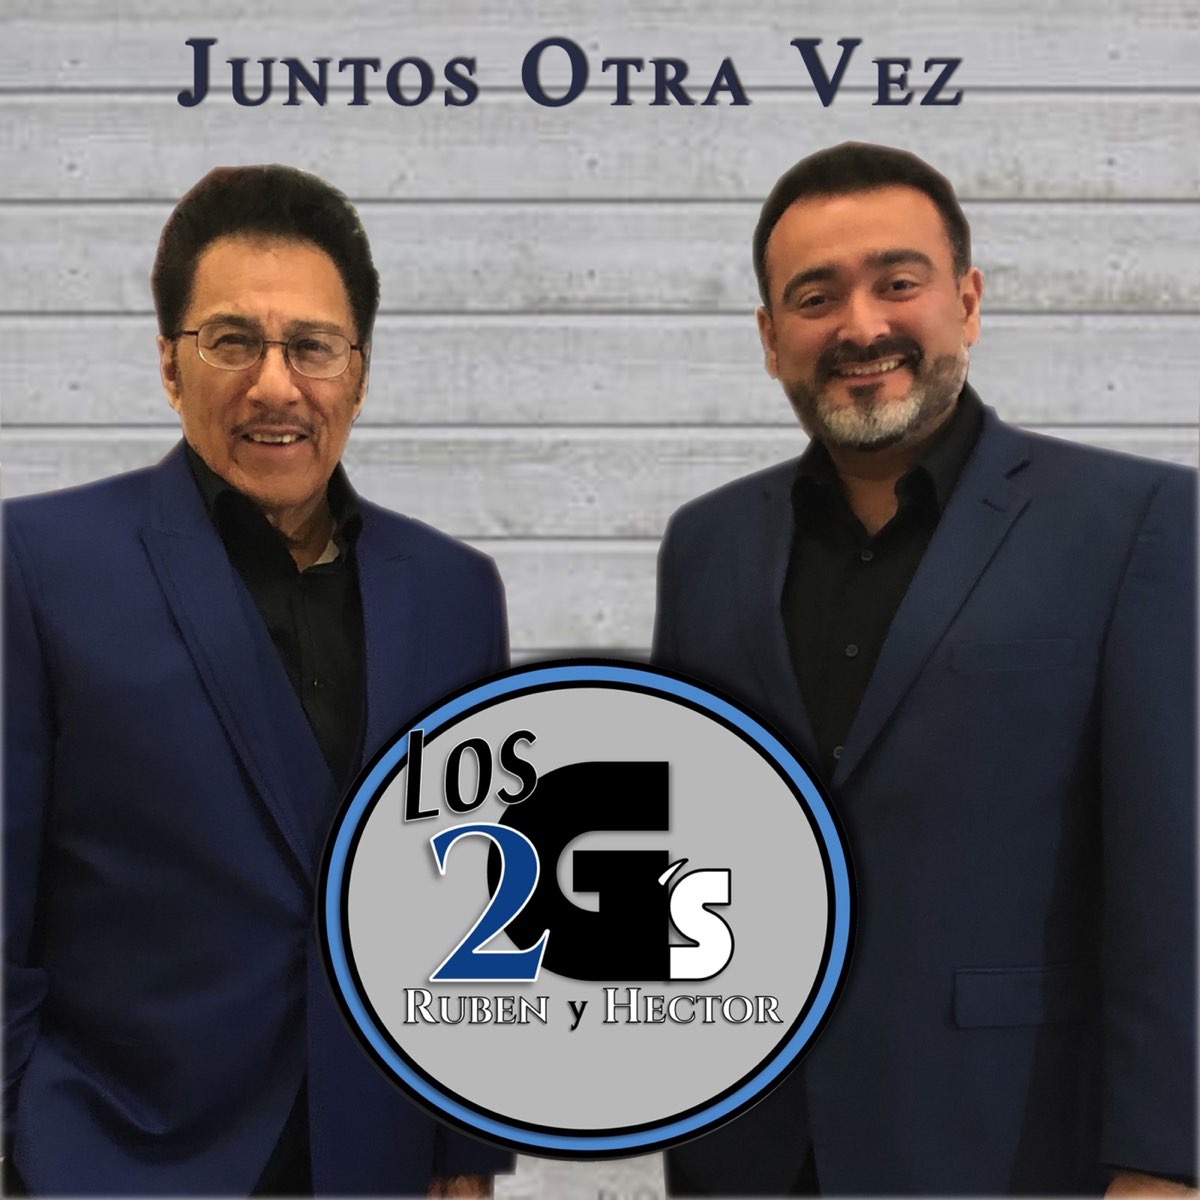 Los 2 G's Ruben Y Hector - Juntos Otra Vez (CD)